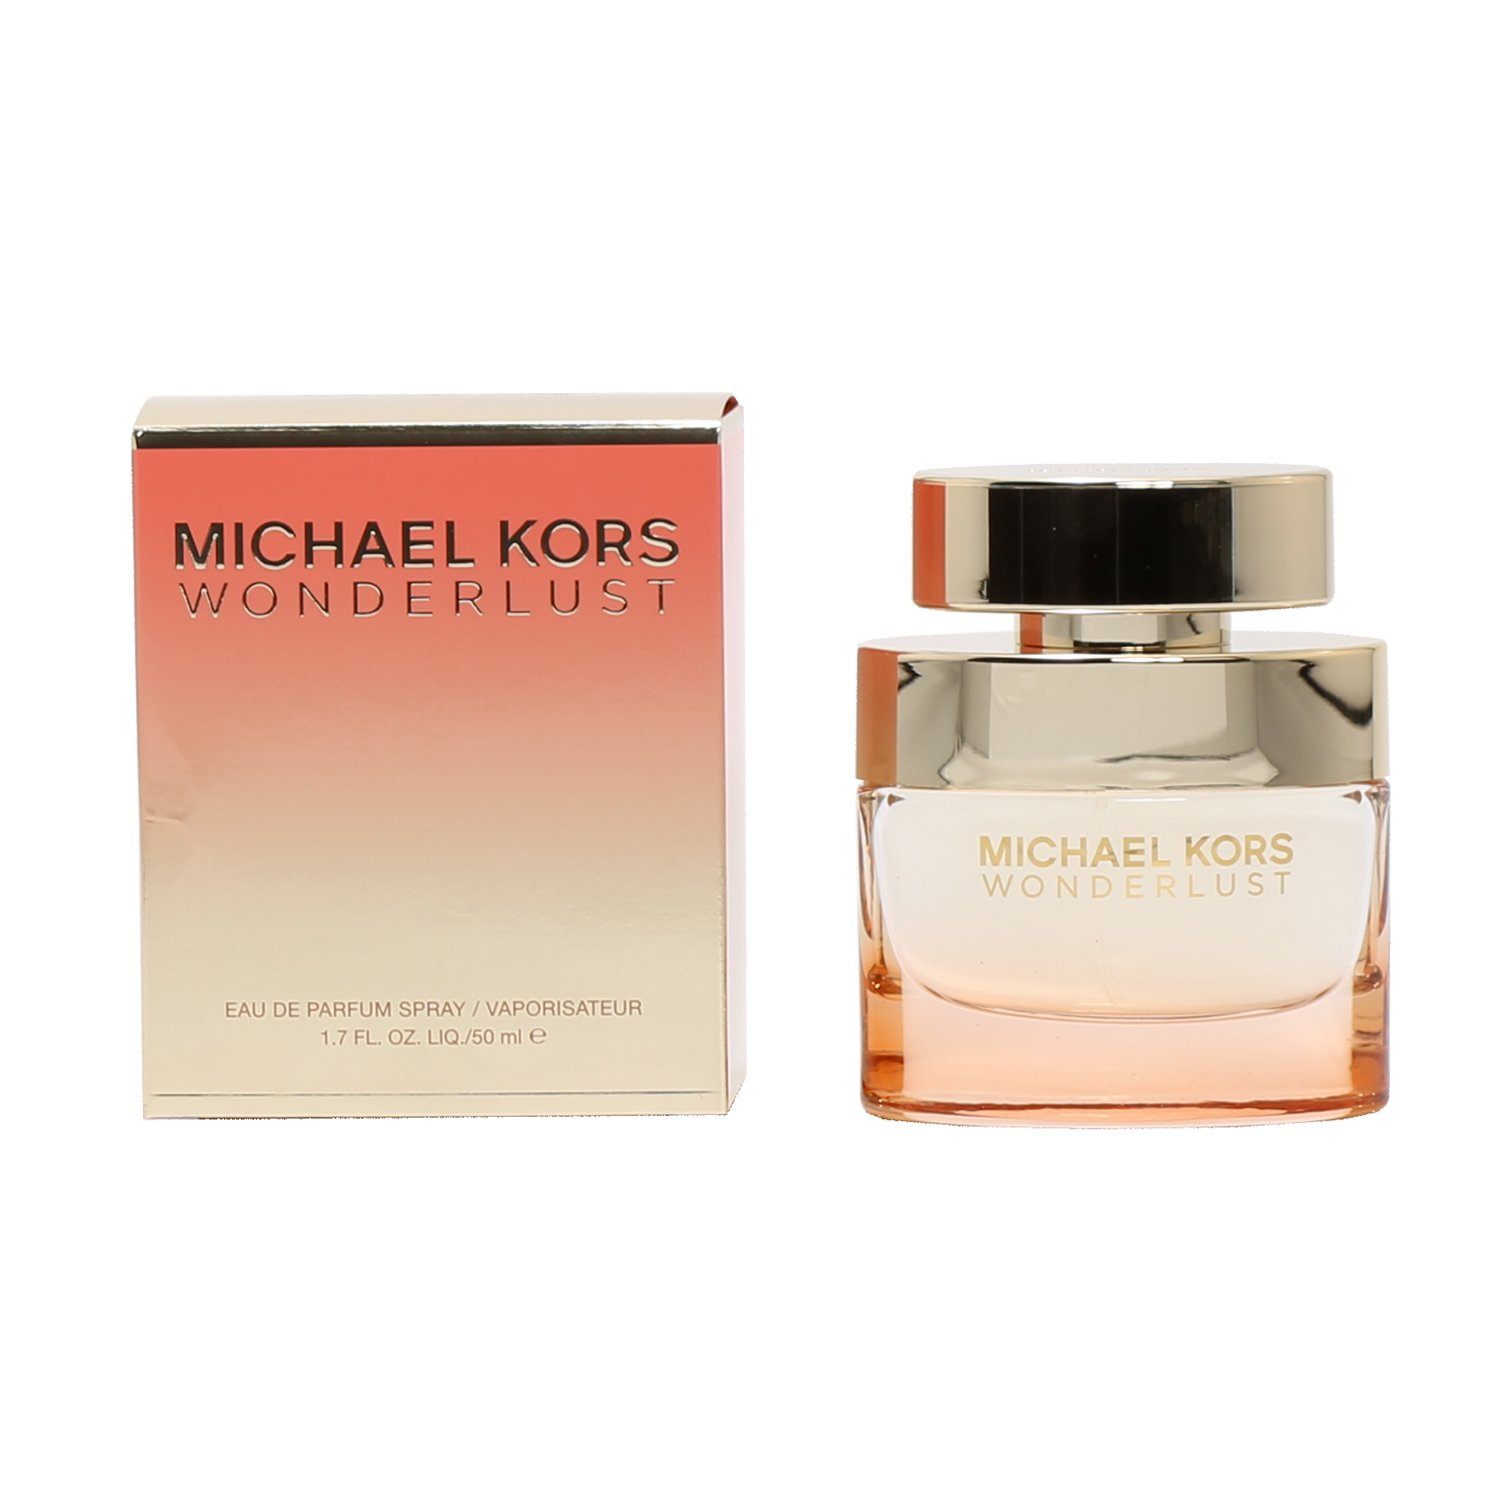 Michael Kors Wonderlust Perfume For Women, 3.4 Oz